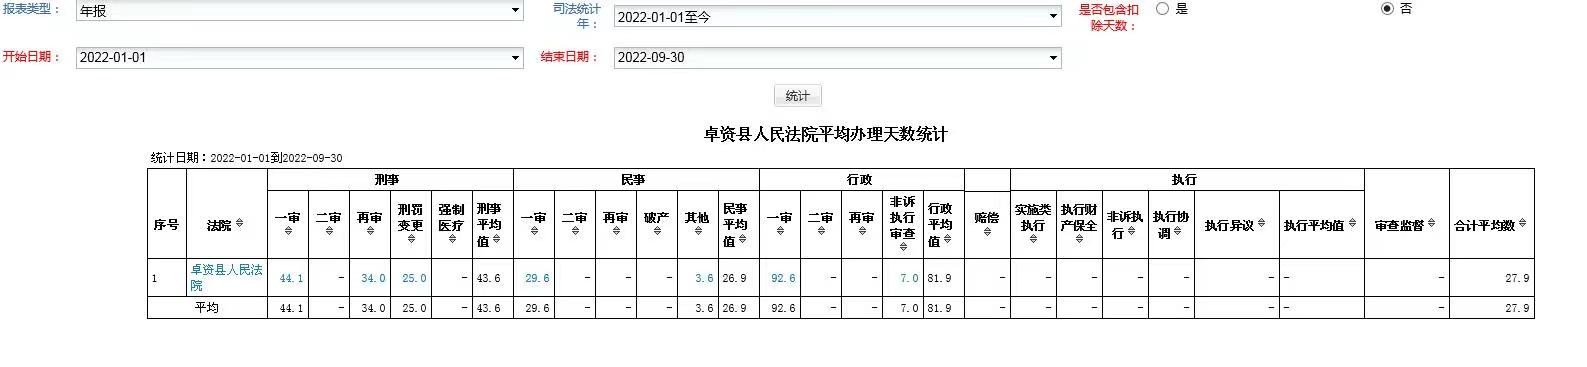 卓资县人民法院审判案件平均办理天数